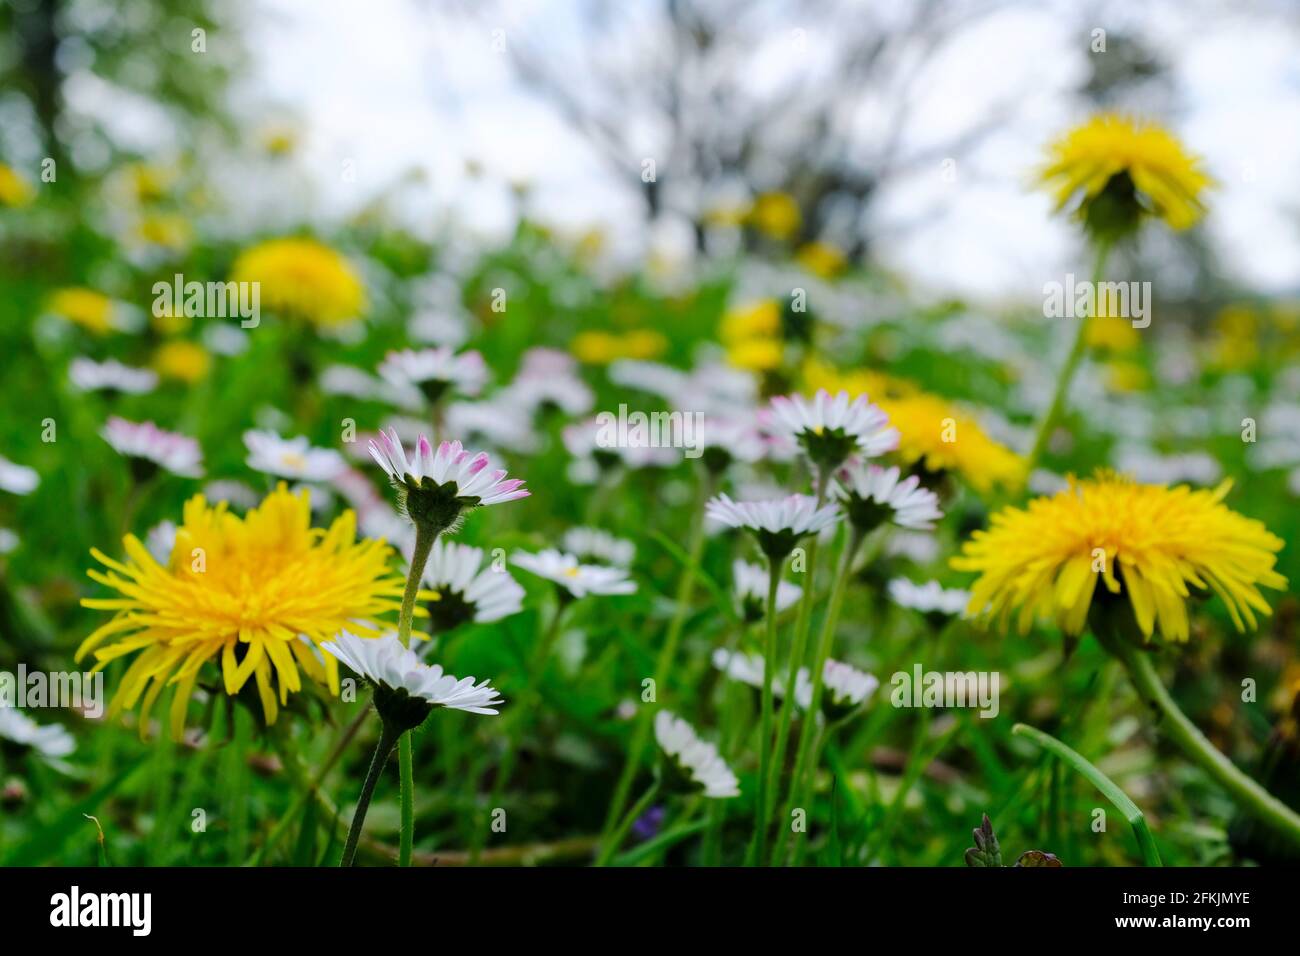 01.05.2021, Essen, Ruhrgebiet, Nordrhein-Westfalen, Deutschland - Gaensebluemchen und Loewenzahn auf einer wilden Wiese in Essen Stock Photo